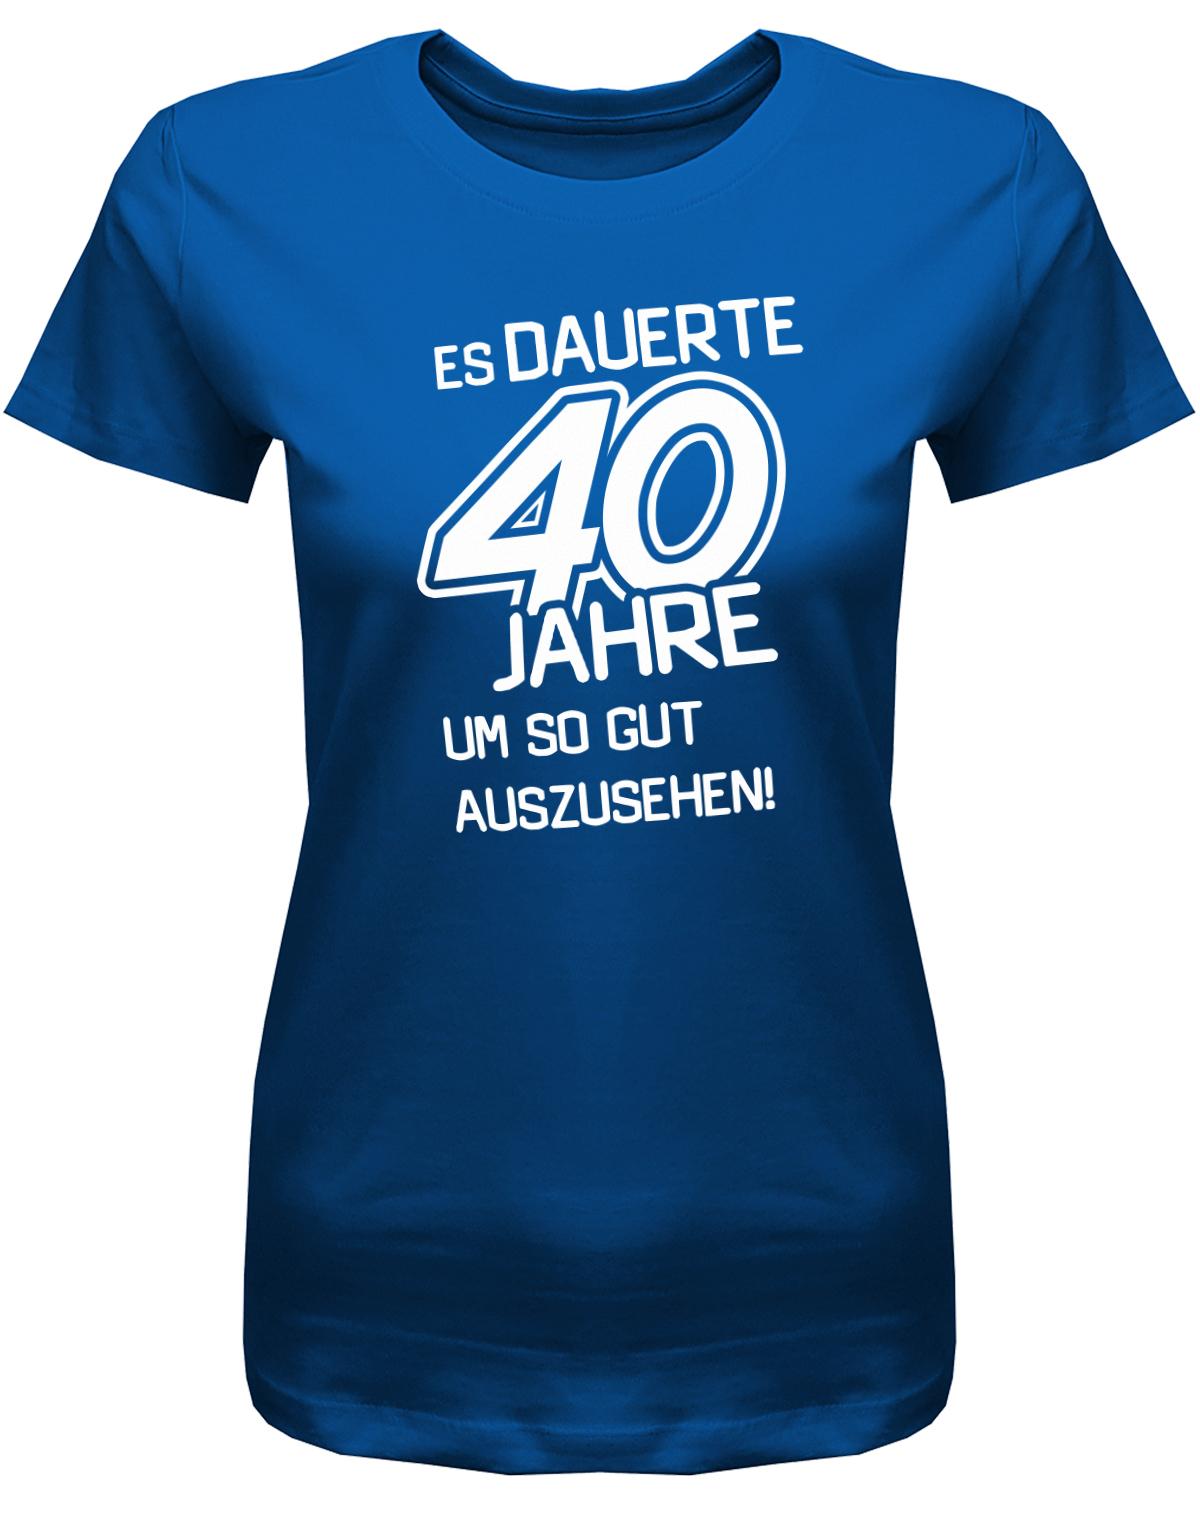 Lustiges T-Shirt zum 40 Geburtstag für die Frau Bedruckt mit Es dauerte 40 Jahre, um so gut auszusehen! Royalblau